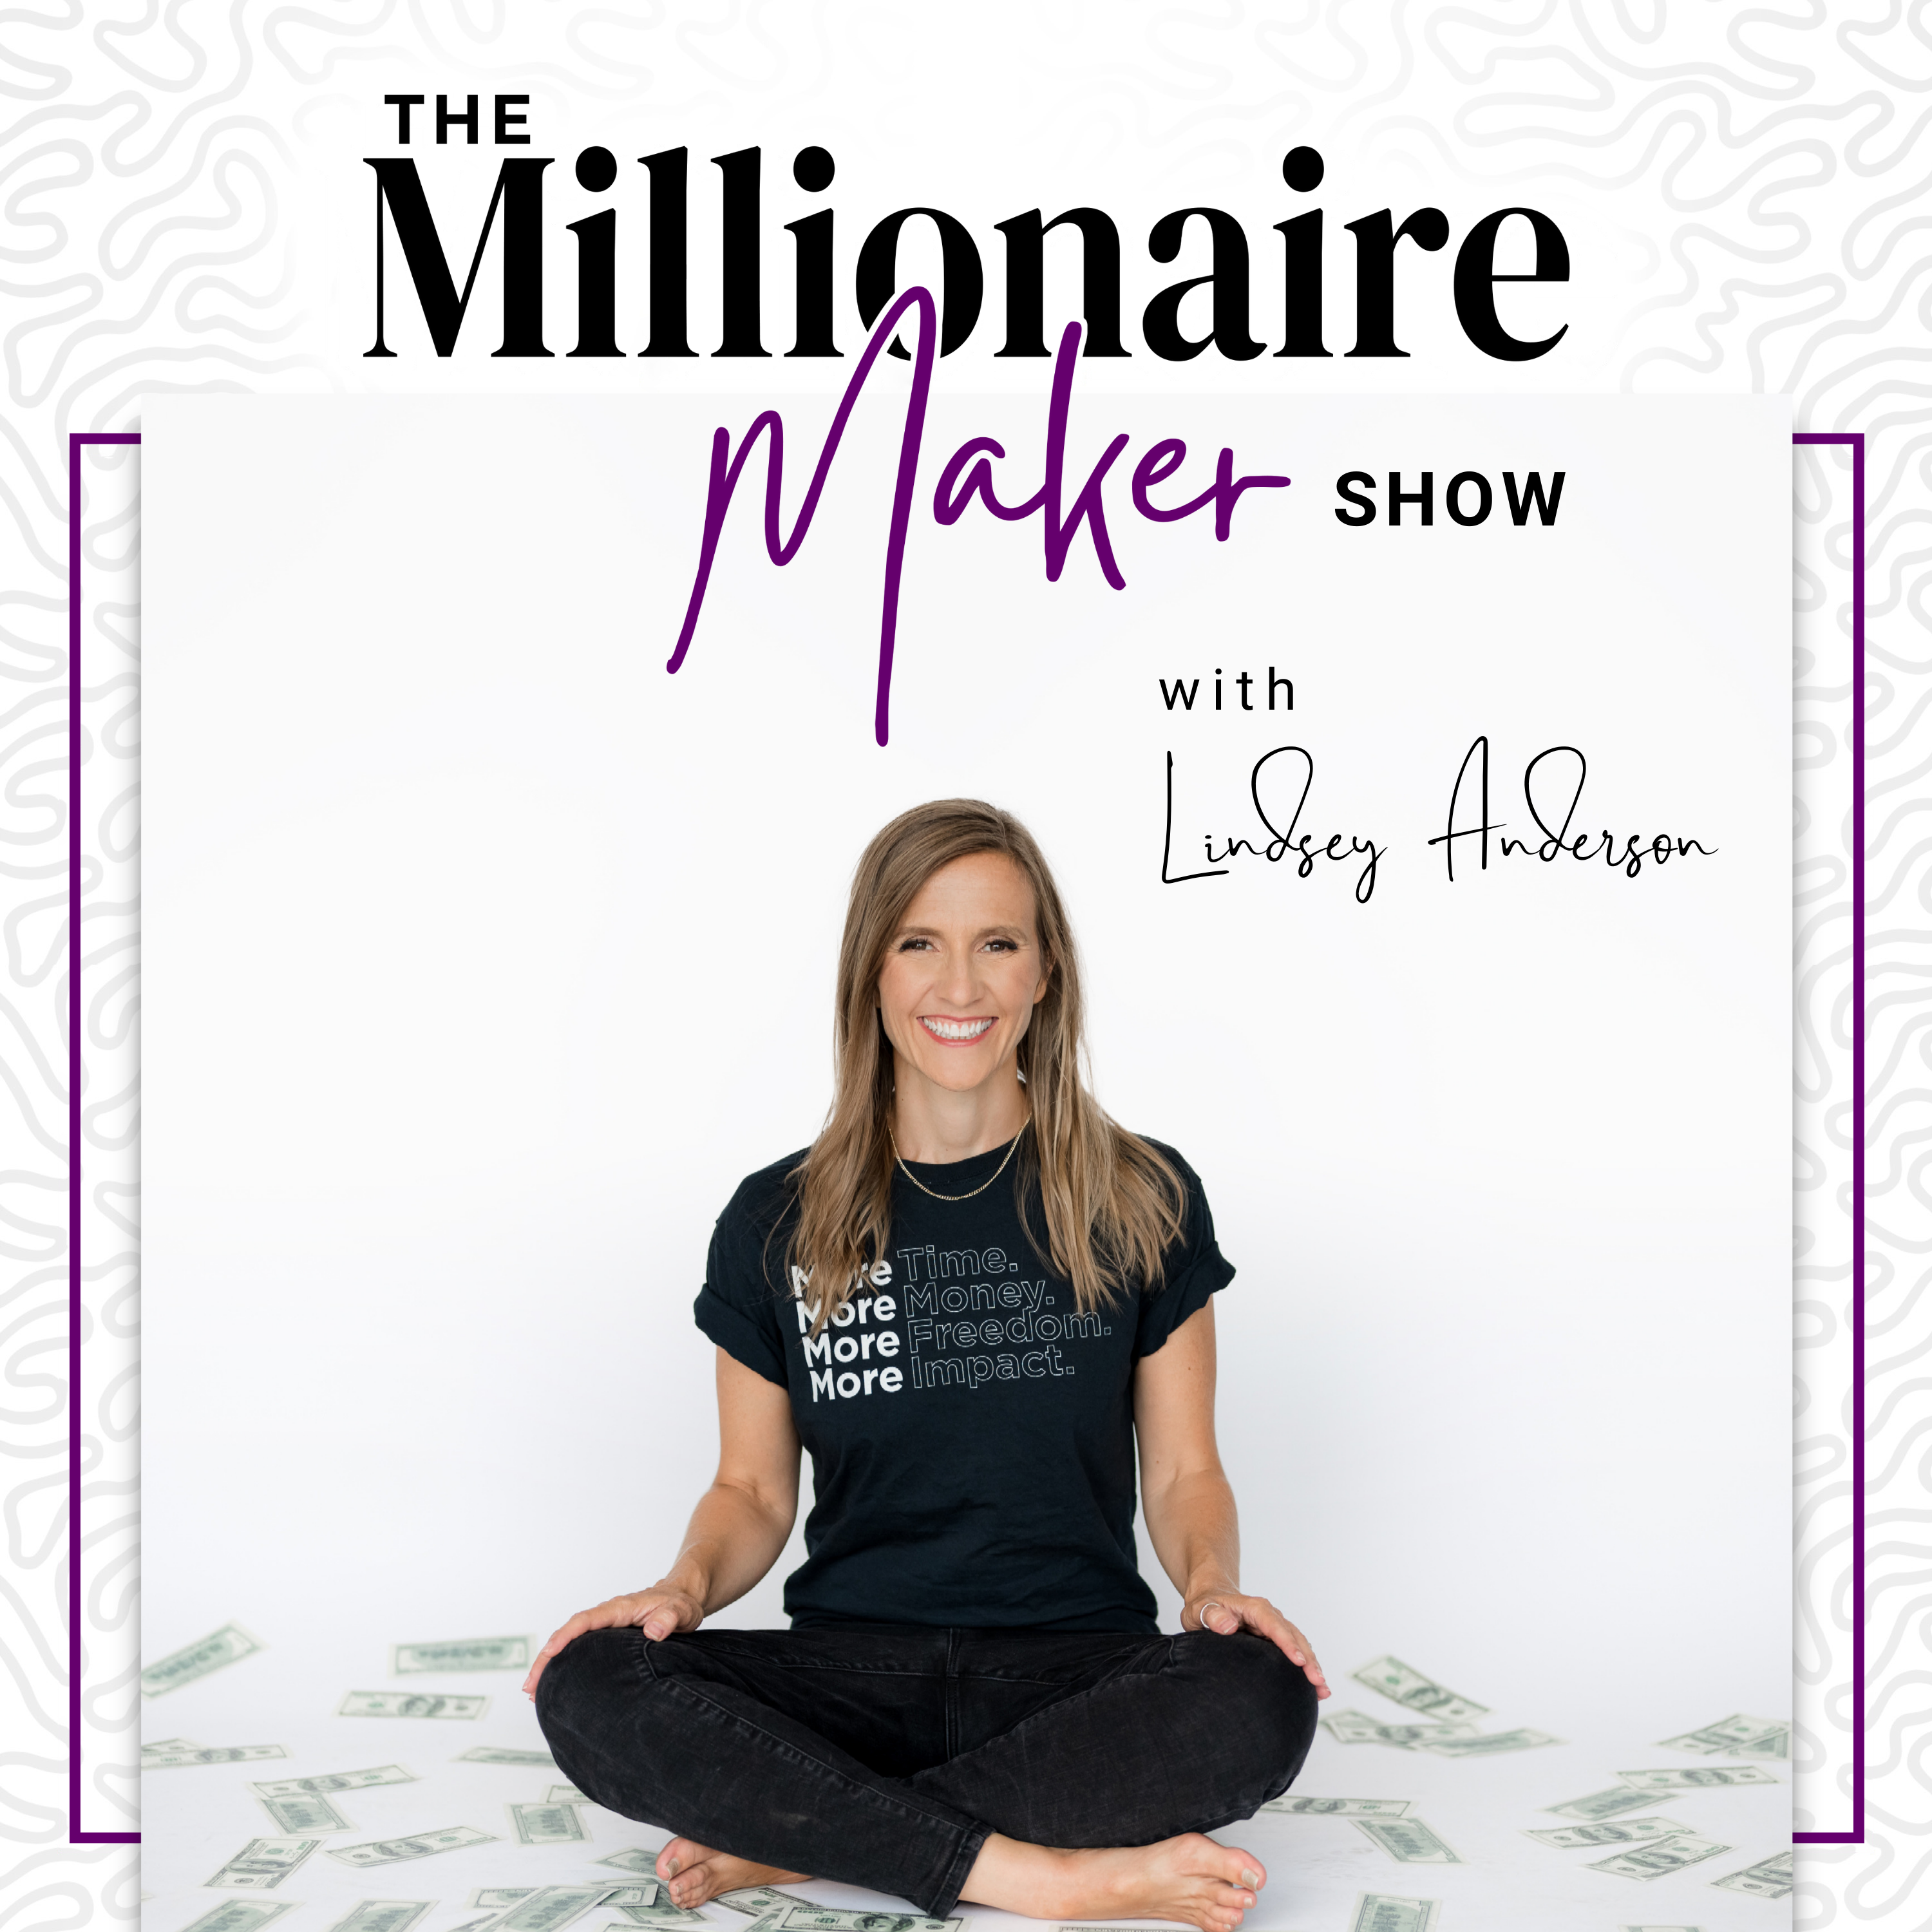 The Millionaire Maker Show